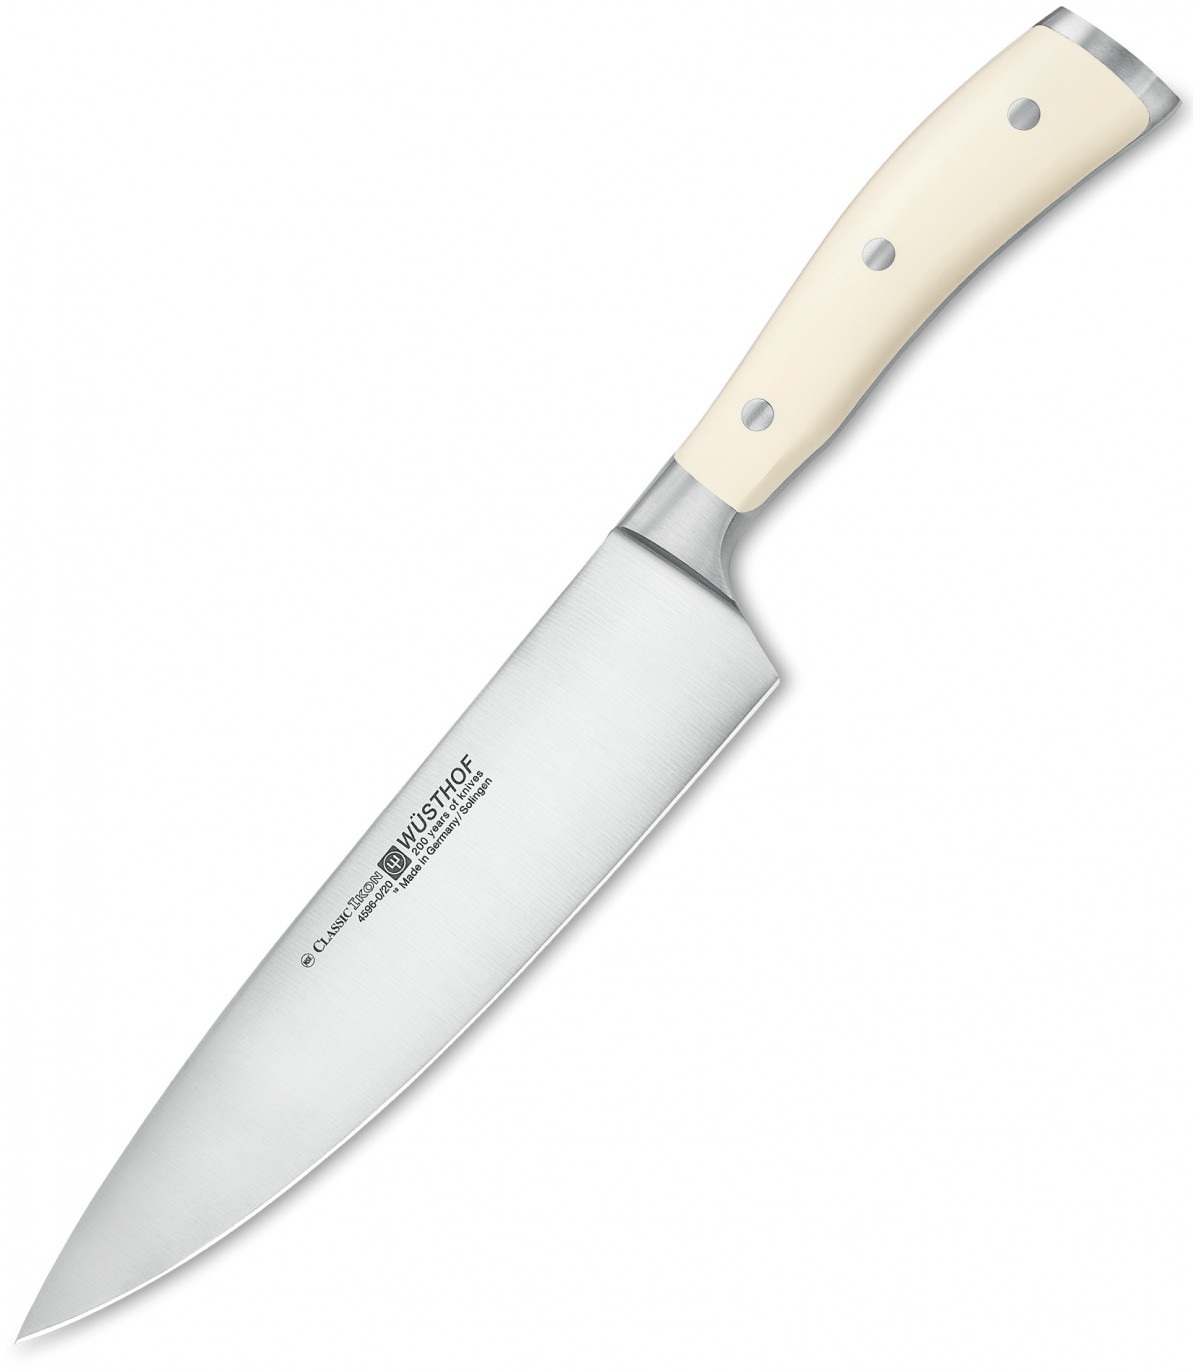 Μαχαίρι Λαχανικών Σεφ 20 εκ. Classic Ikon Creme 4596-0-20 1040430120 Wusthof  - 0